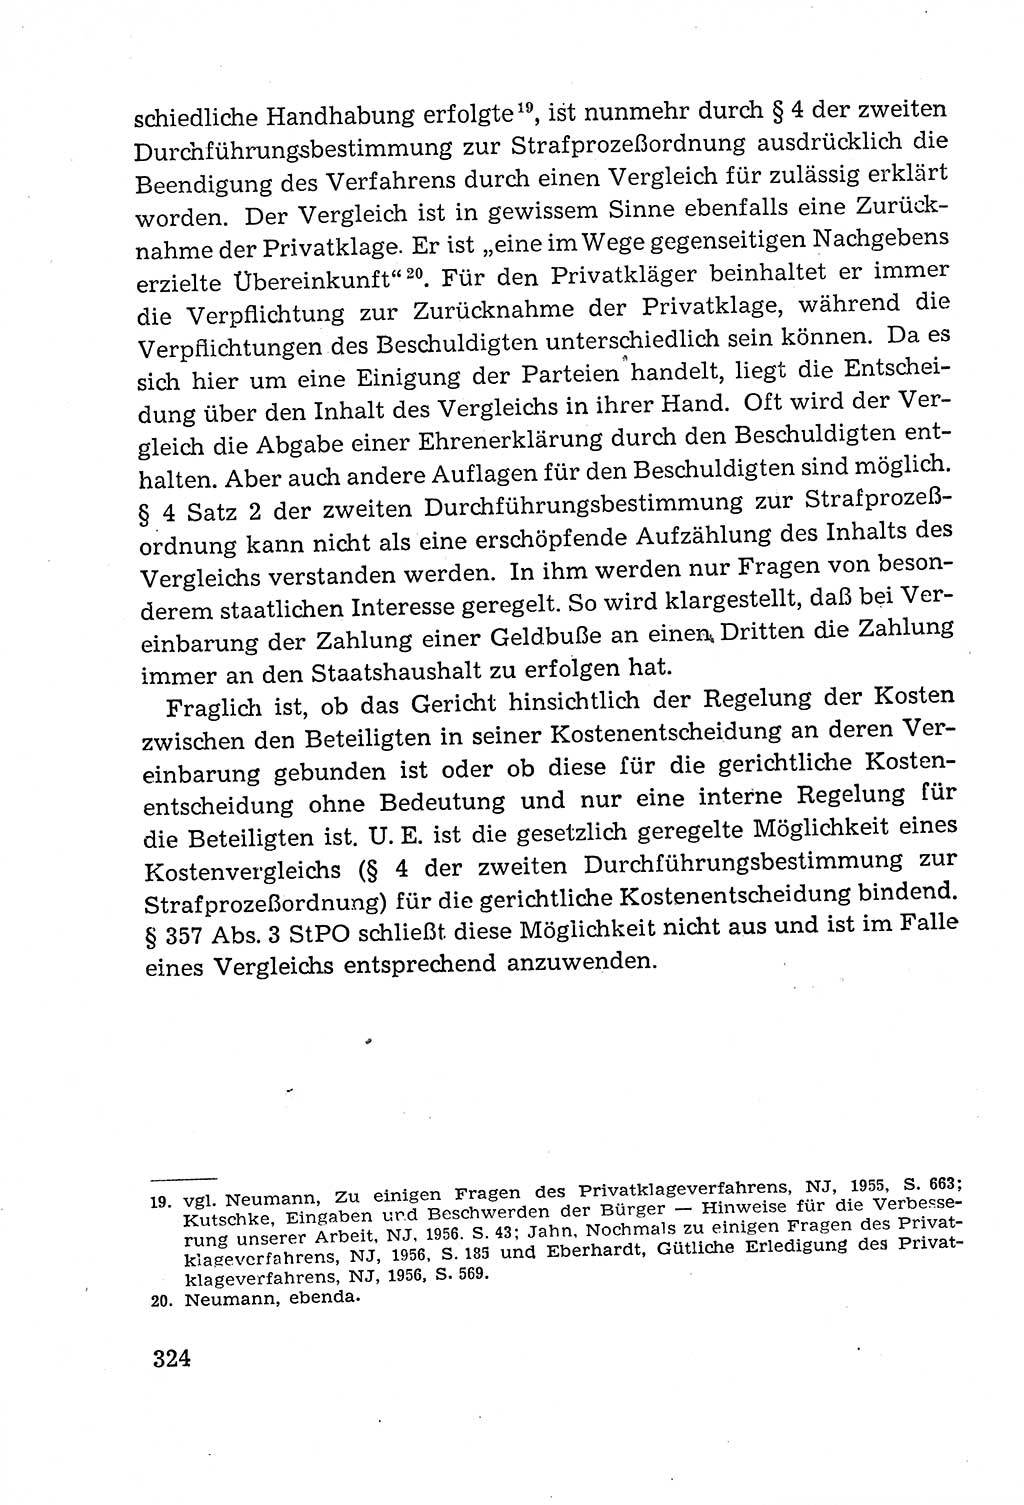 Leitfaden des Strafprozeßrechts der Deutschen Demokratischen Republik (DDR) 1959, Seite 324 (LF StPR DDR 1959, S. 324)